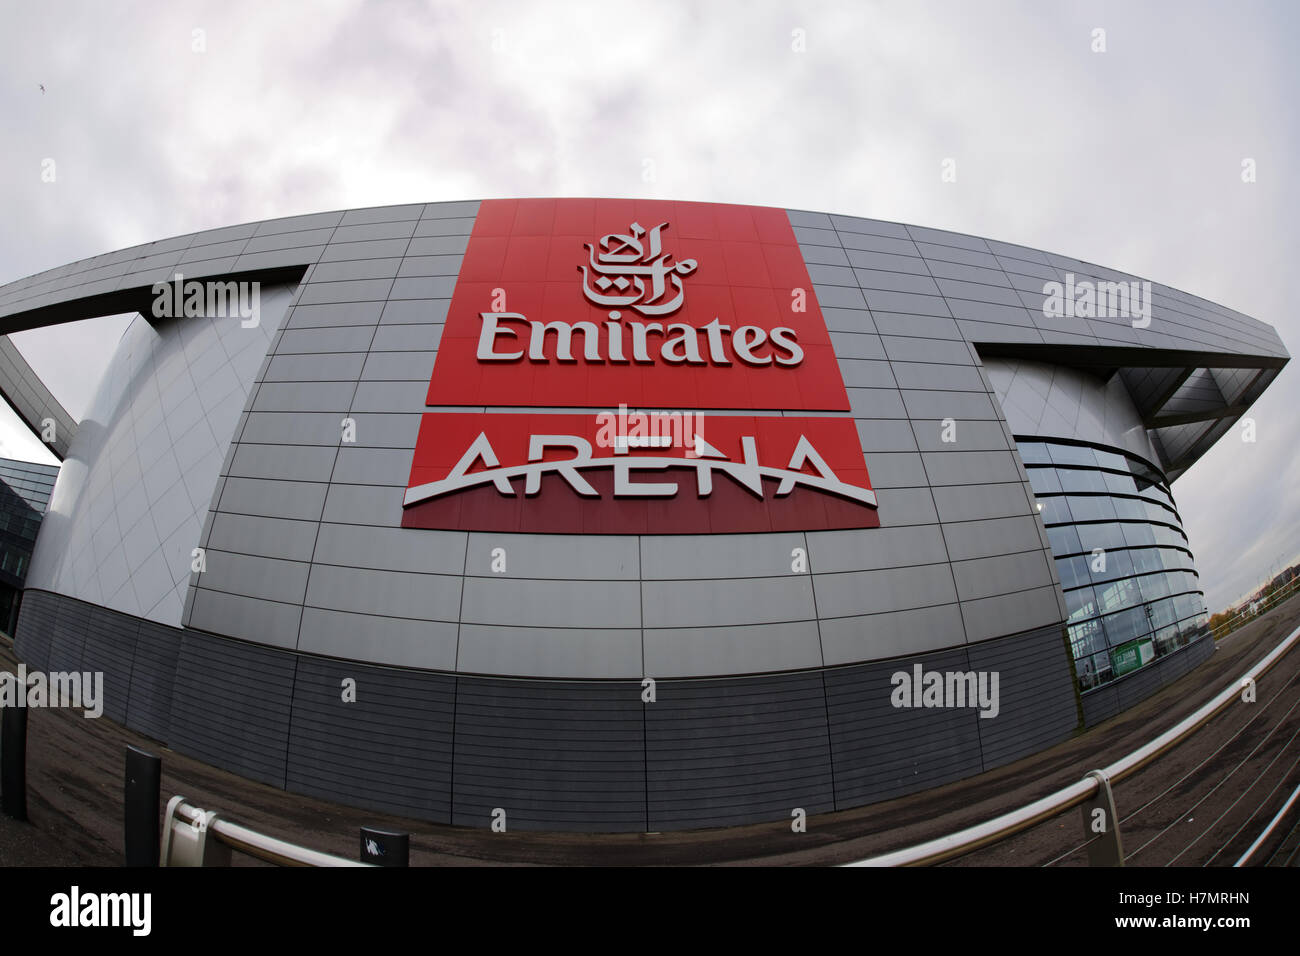 Emirates arena Glasgow logo Stock Photo